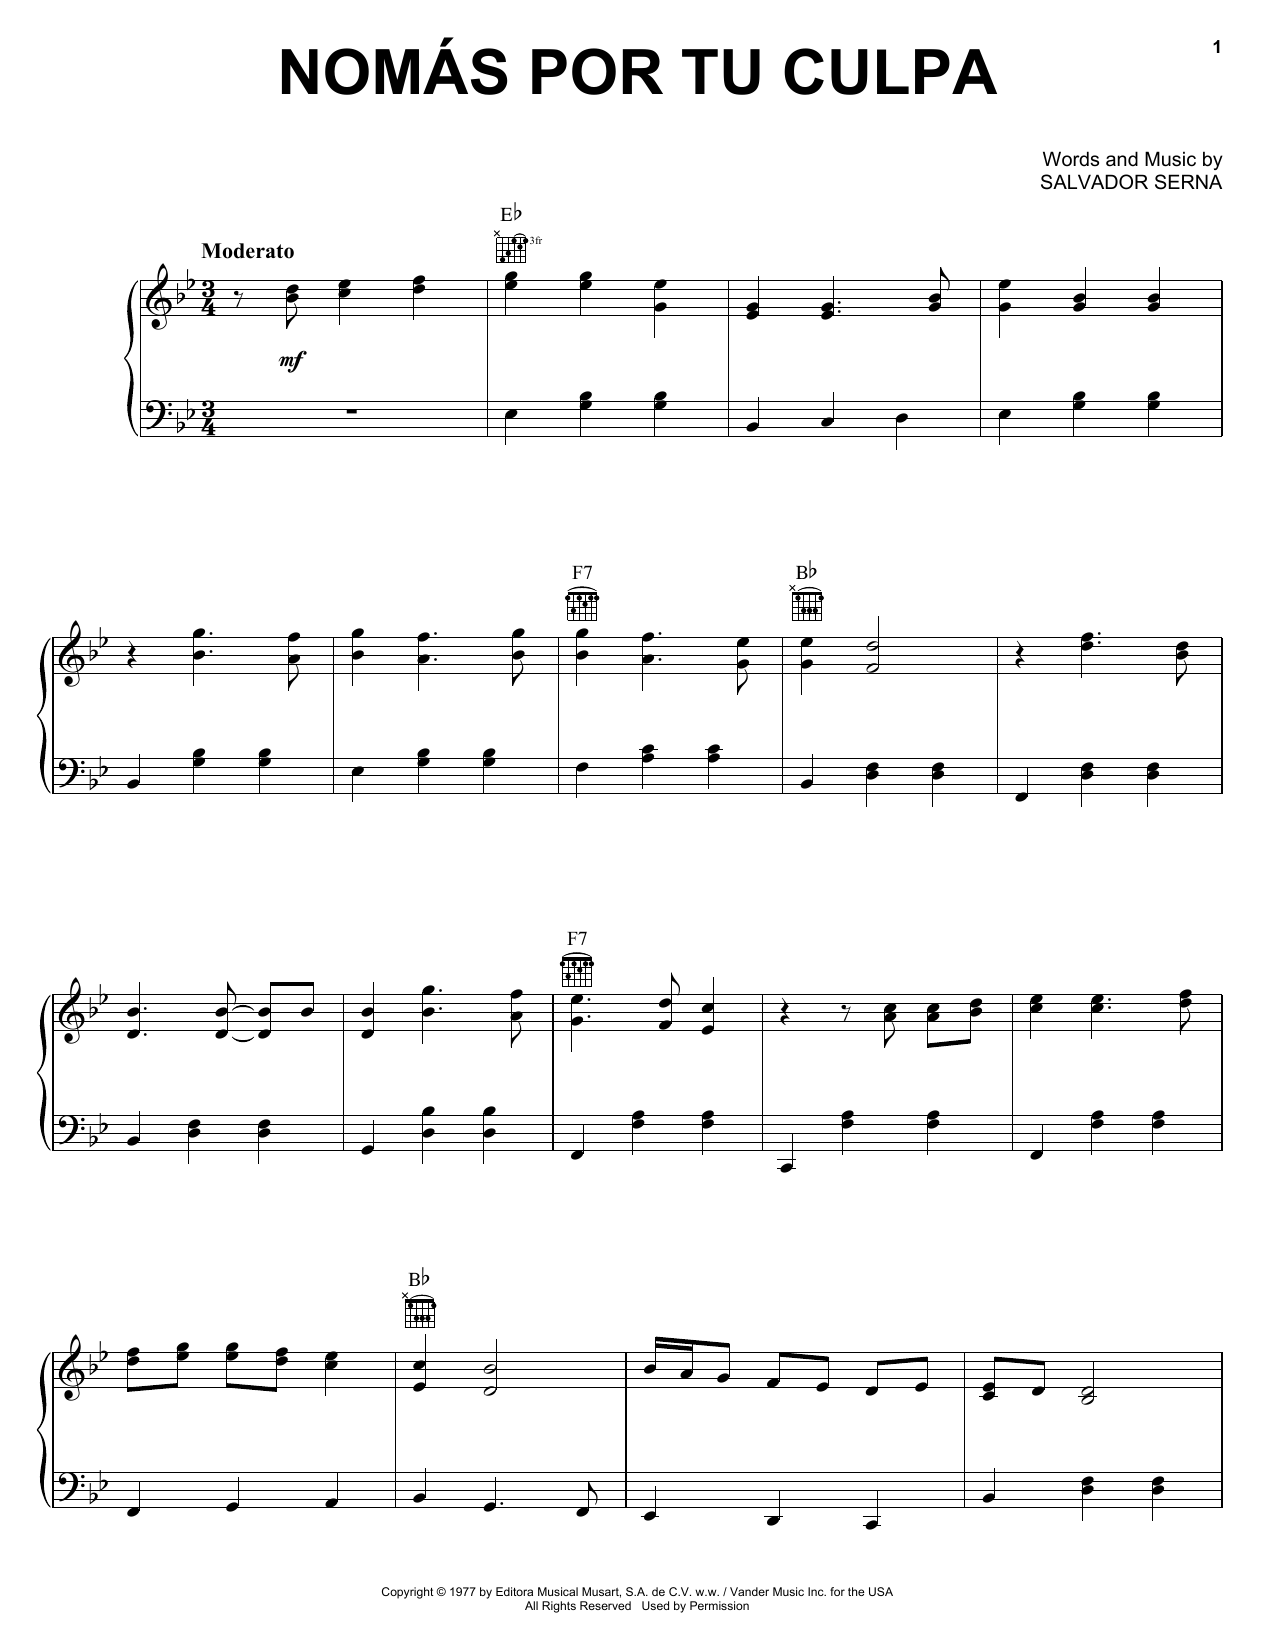 Salvador Serna Nomas Por Tu Culpa Sheet Music Notes & Chords for Piano, Vocal & Guitar (Right-Hand Melody) - Download or Print PDF